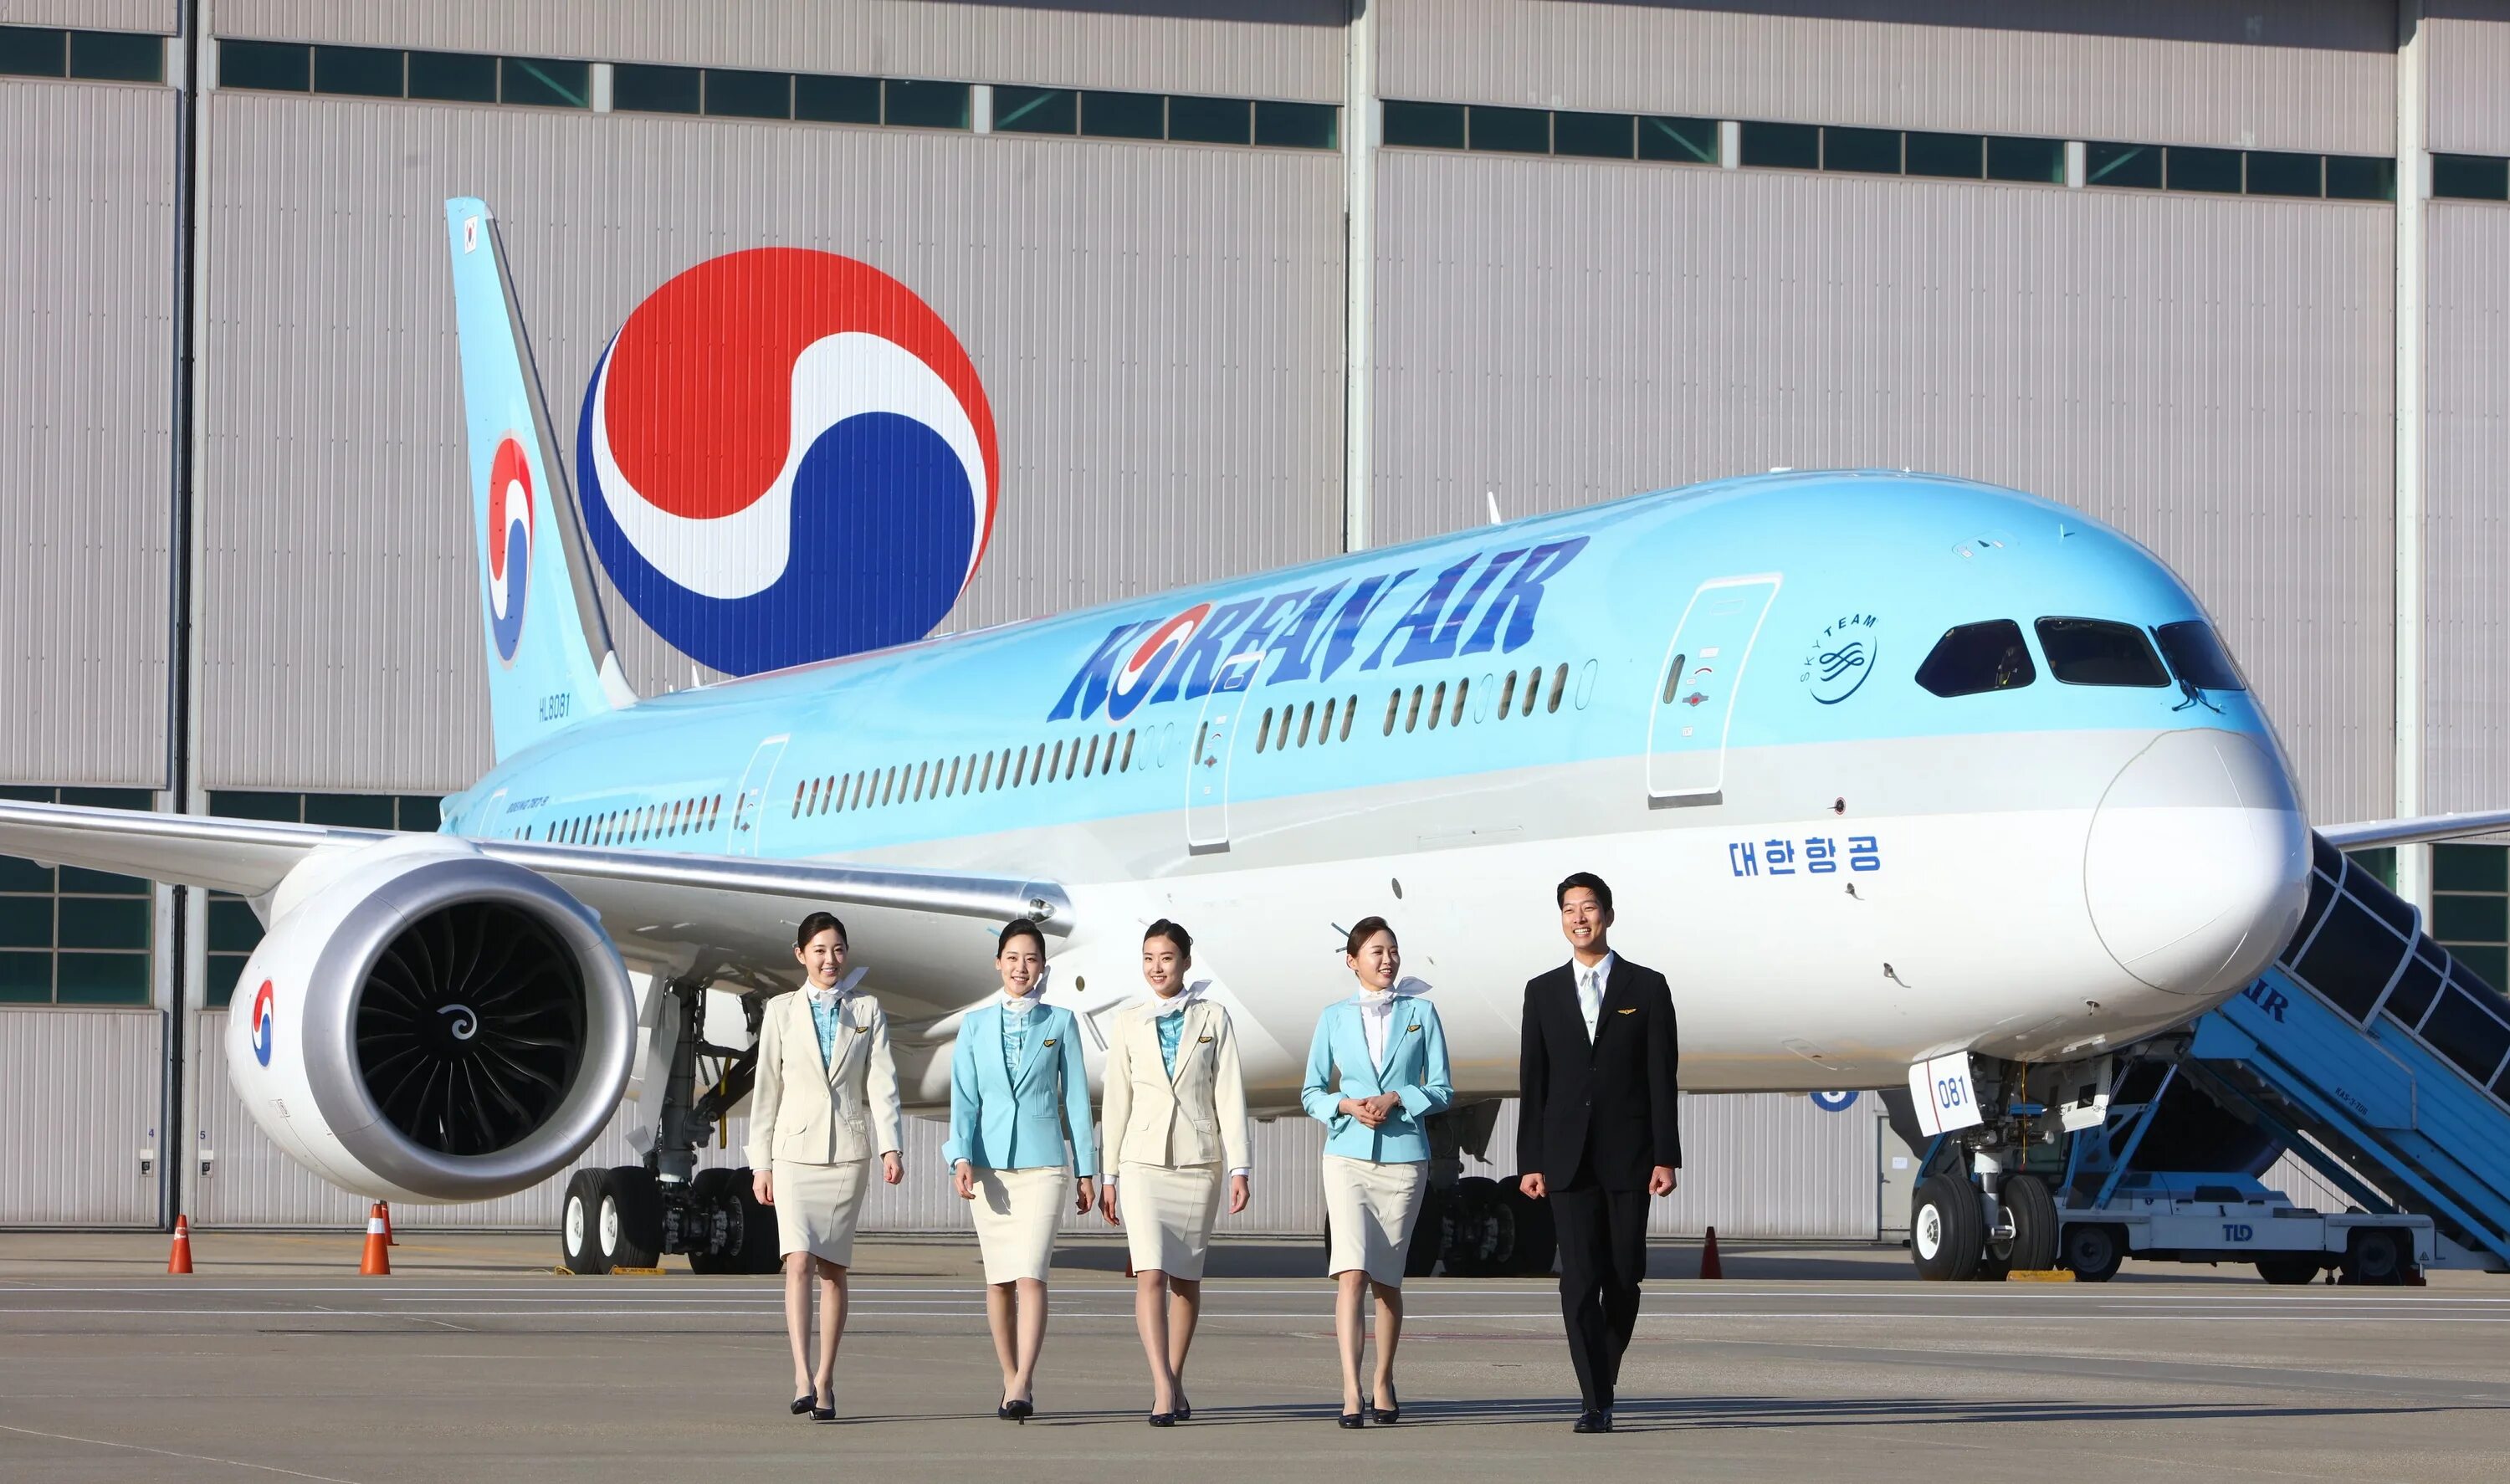 Авиакомпании перевозчики. Korean Airlines (Южная Корея) форма. Авиакомпания Кореан Эйр. Korean Air Boeing 787-9 Dreamliner. Korean Airlines (Южная Корея) стюардессы.